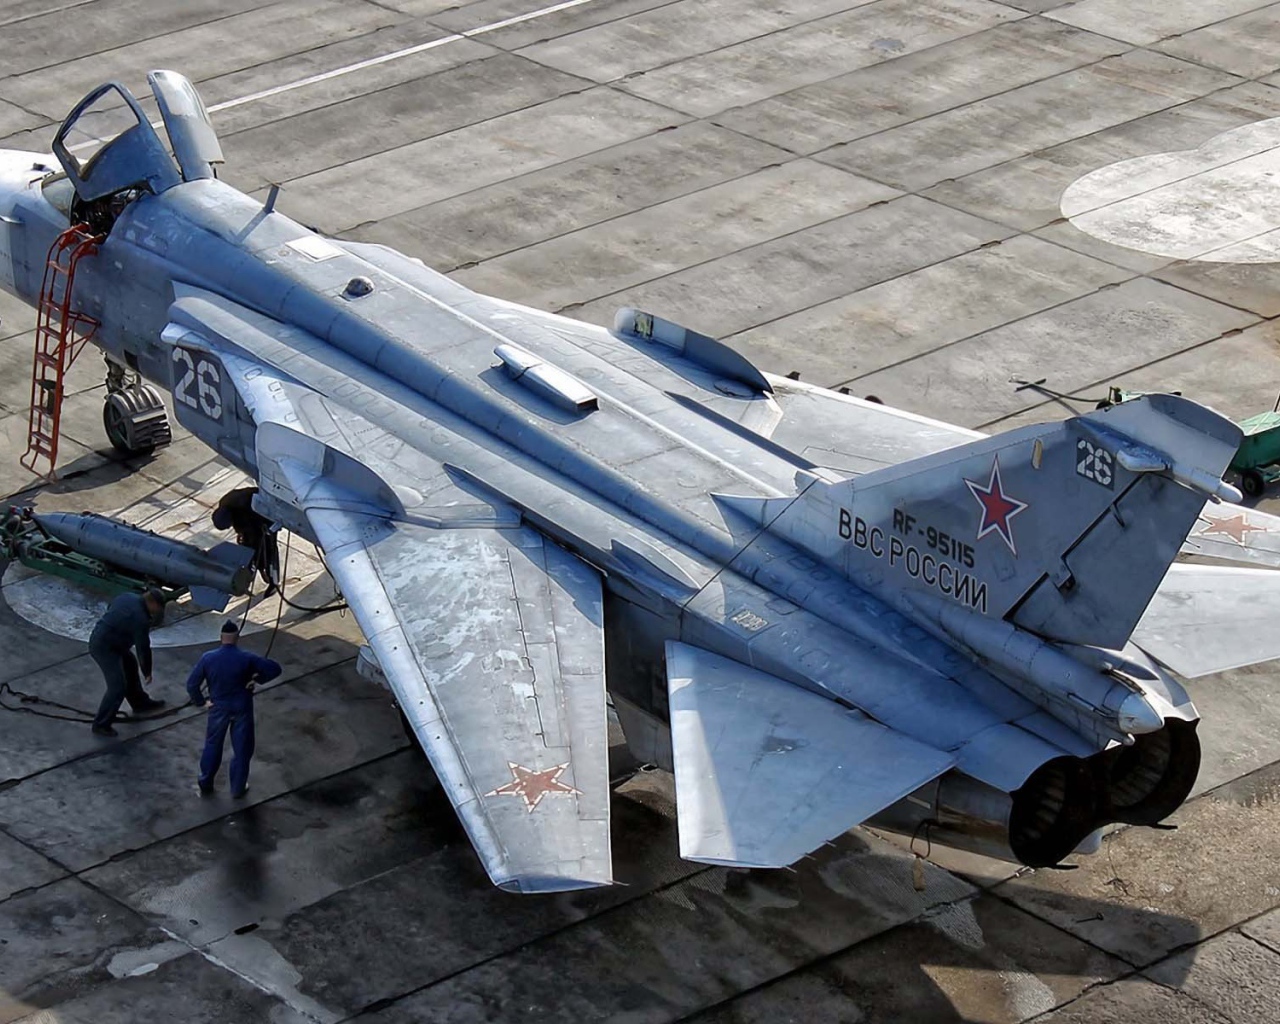 Russian su-24 bomber